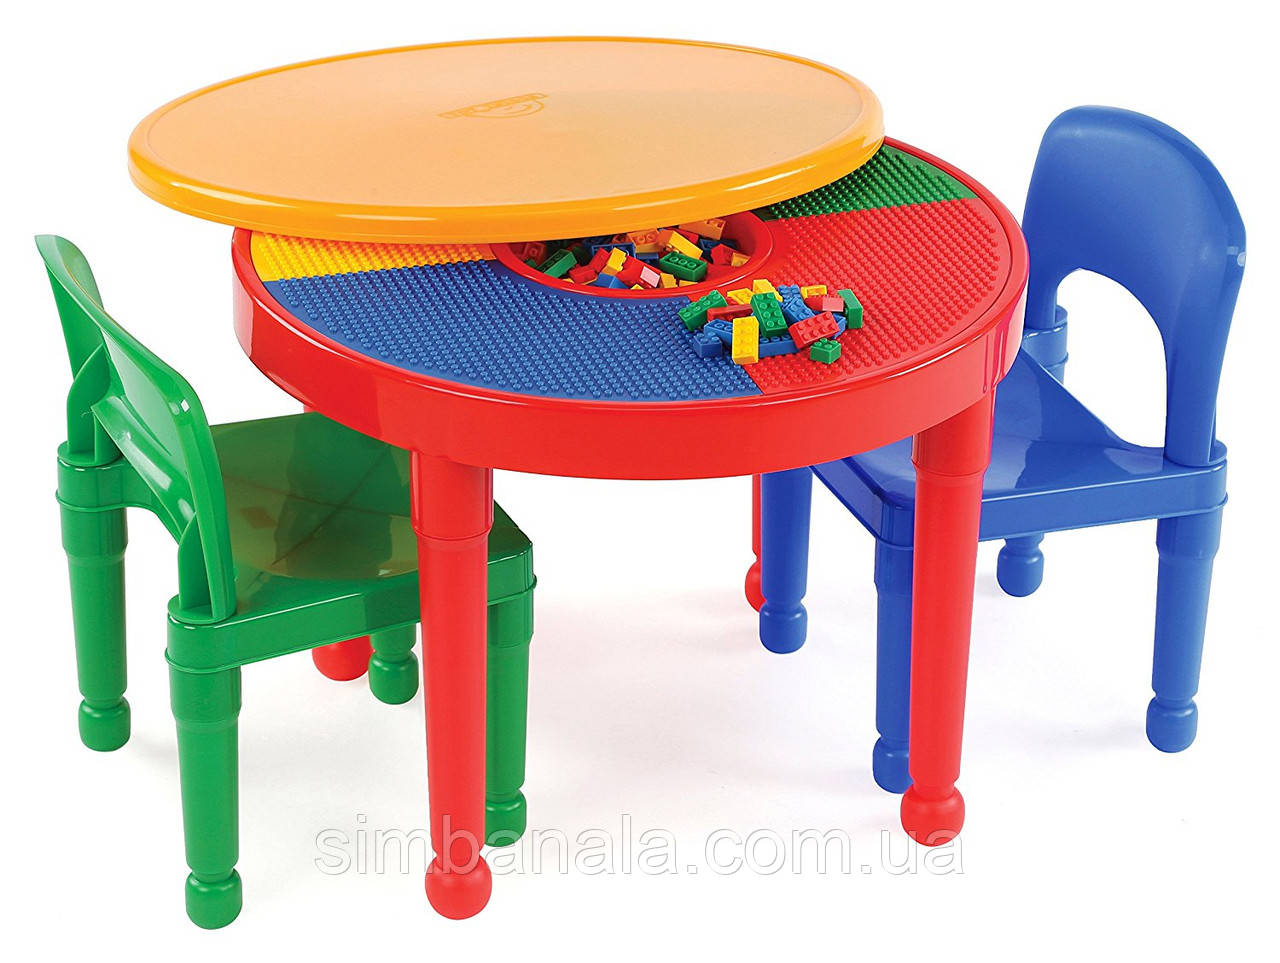 Круглый игровой стол с двумя стульчиками, для LEGO и творческих заняти